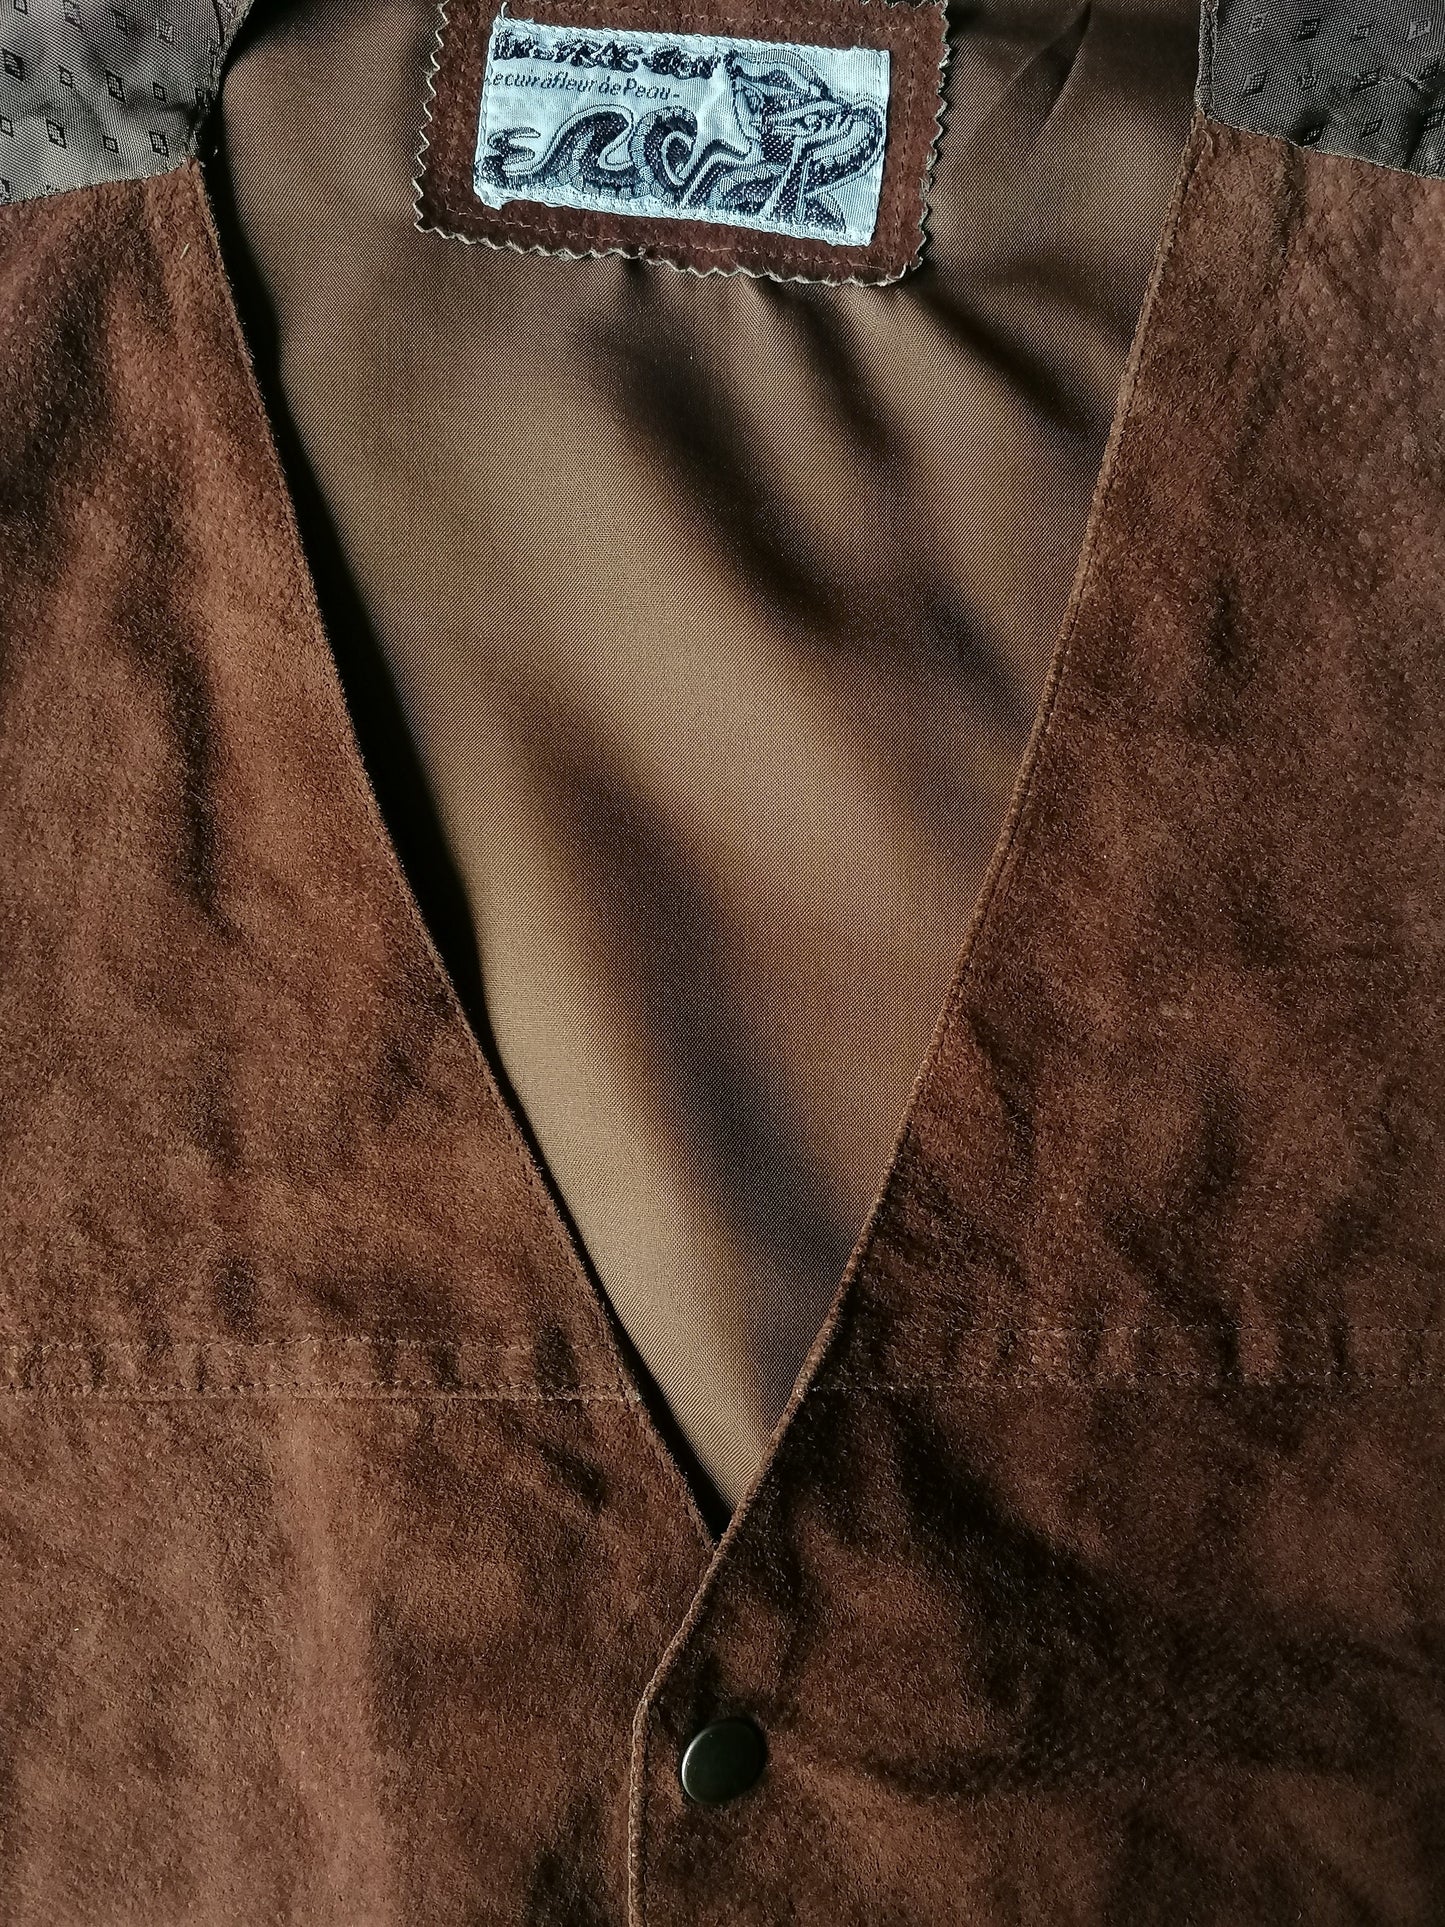 Chaleco de cuero en FRAC-Tigs con pernos de prensa. Color marrón. Talla M.